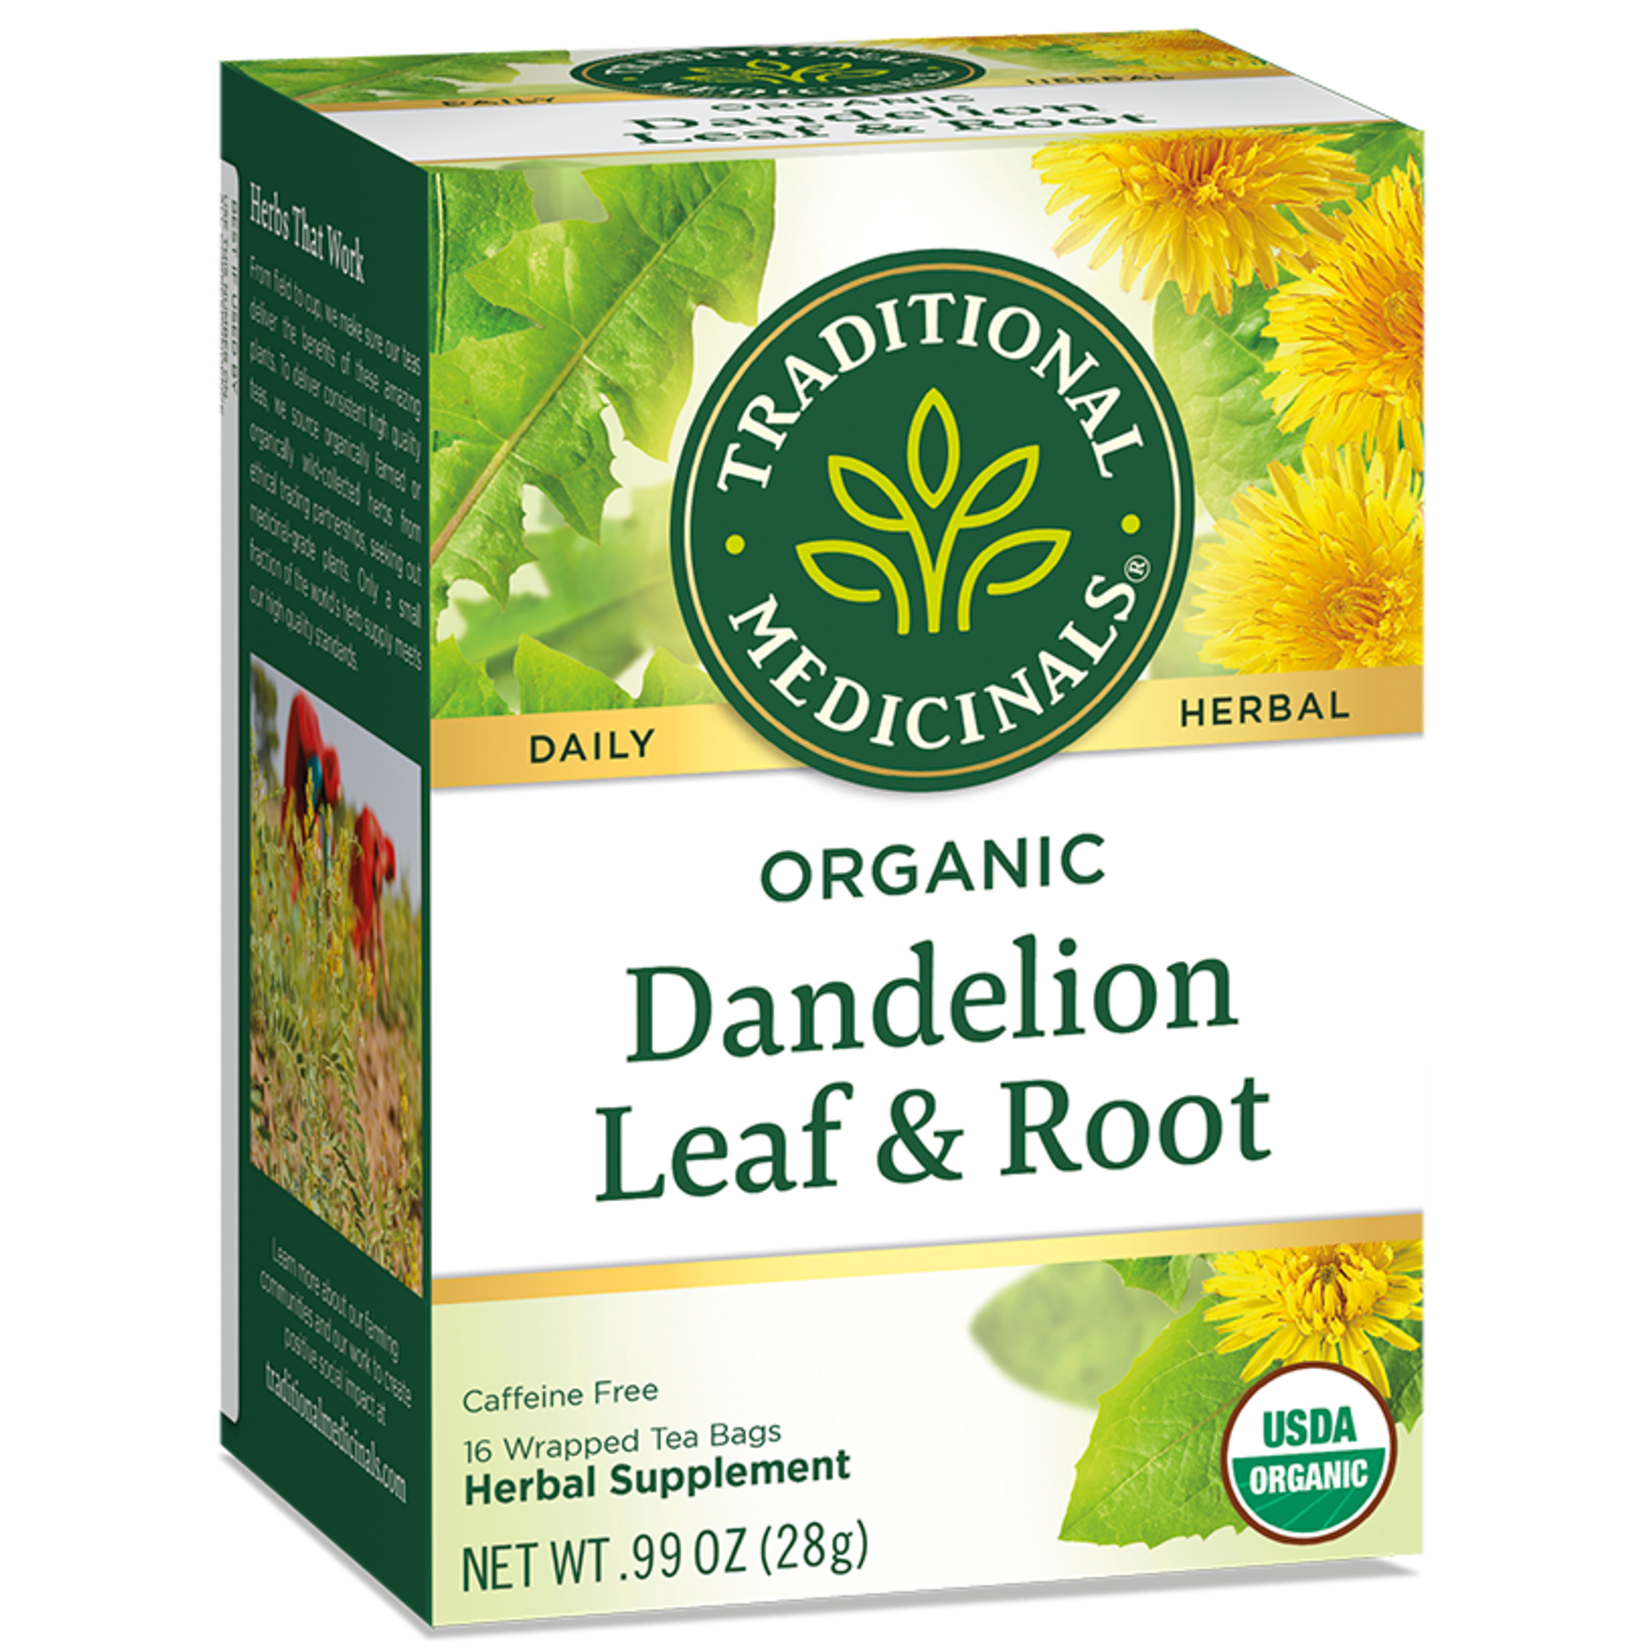 Traditional Medicinals Traditional Medicinals - Organic Dandelion Leaf & Root Tea - 16 Bags